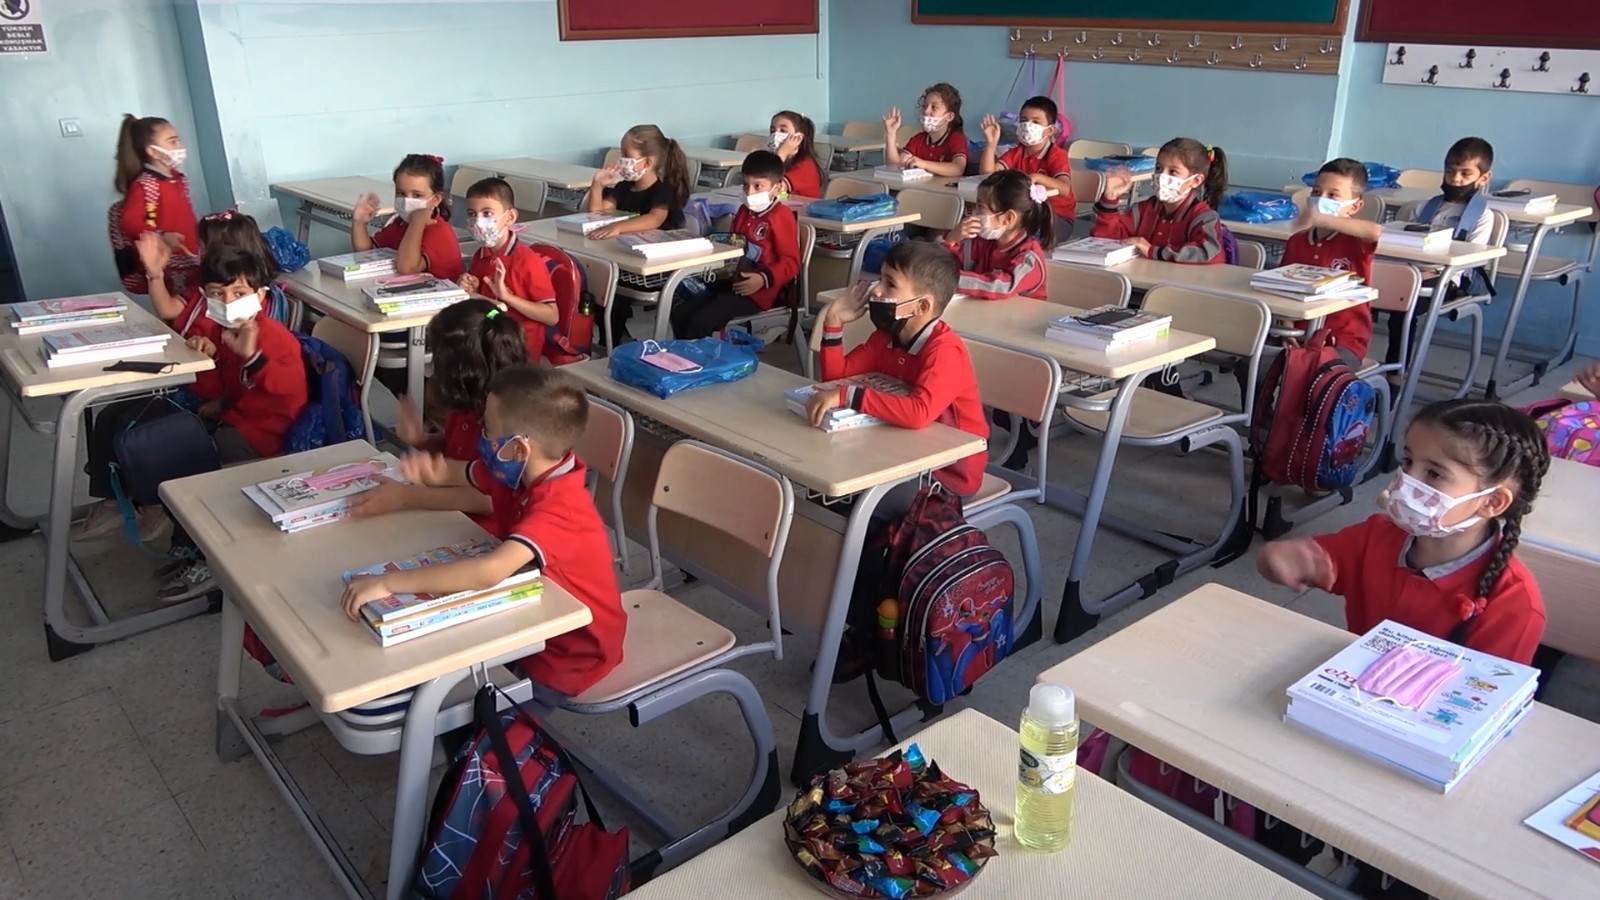 6135d00188edf-Kırıkkale’de okul servisleri denetlendi.jpg